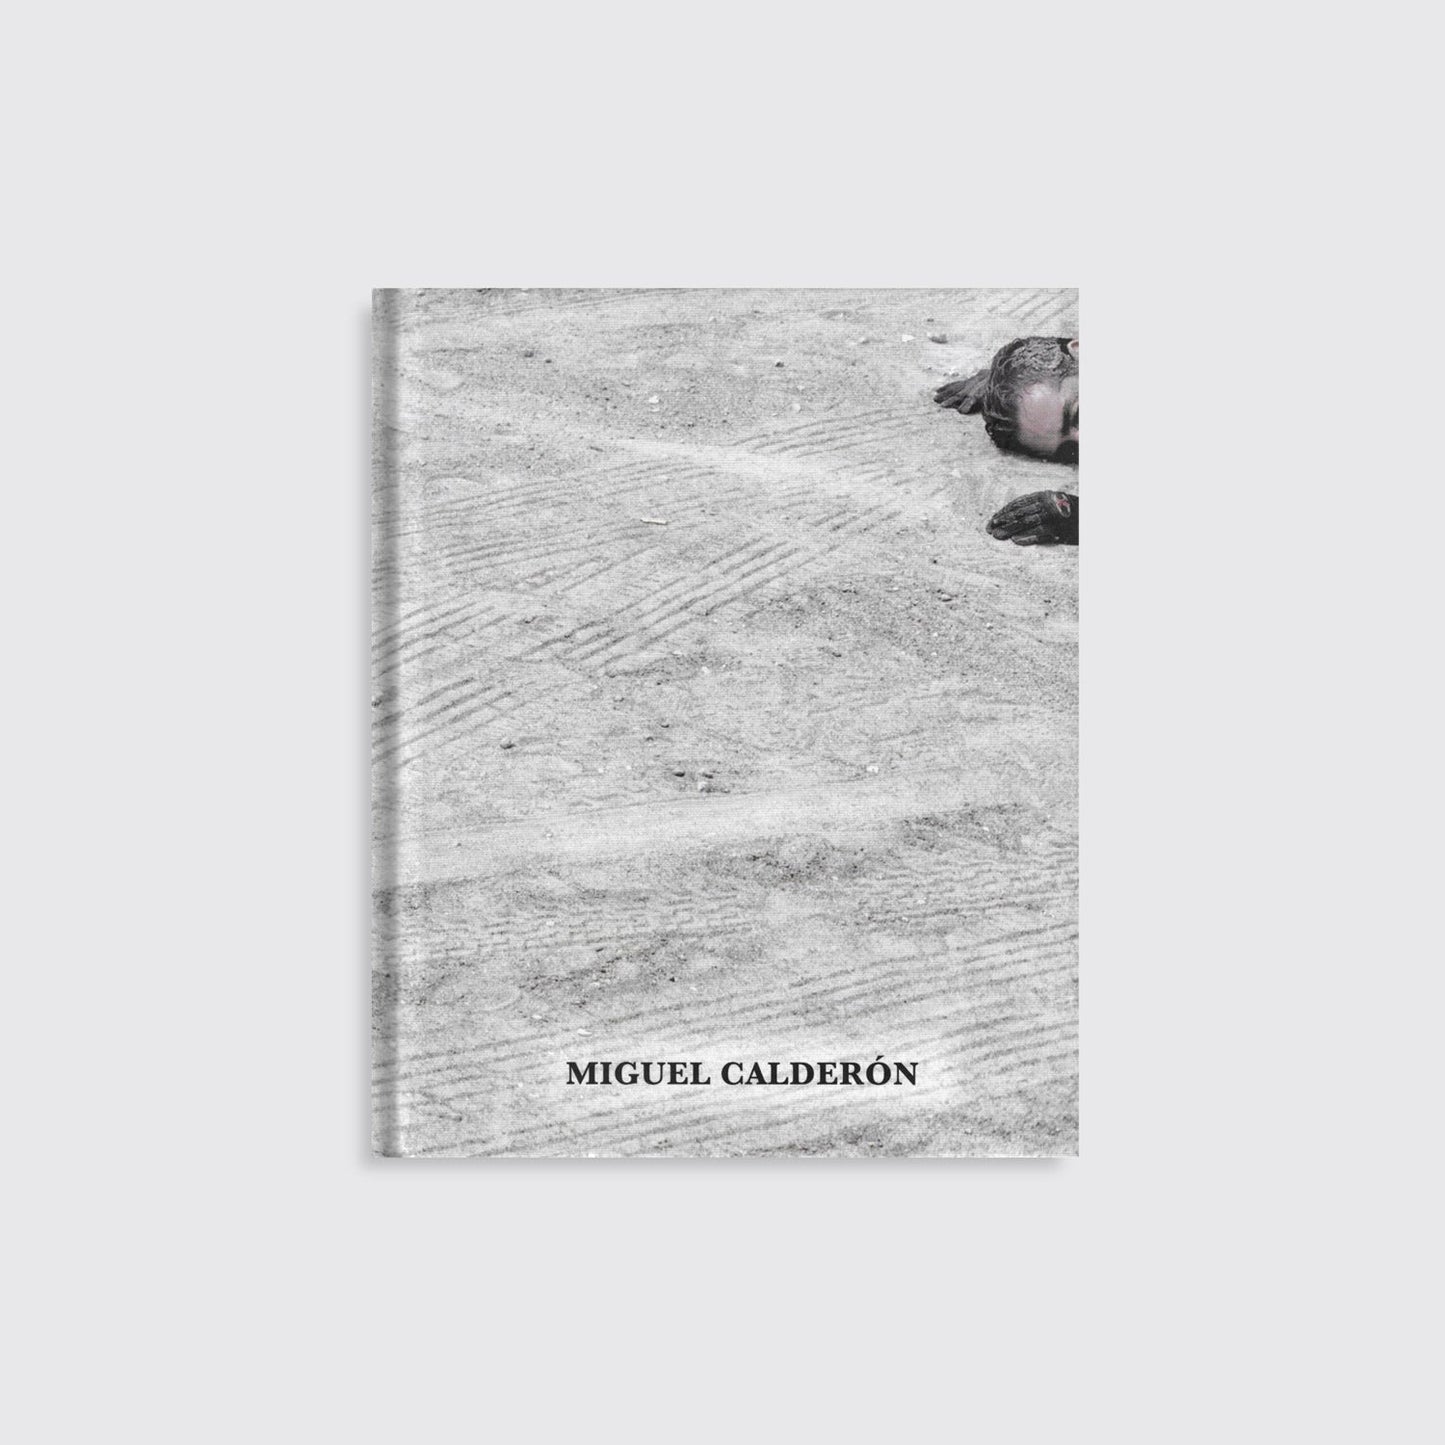 BOOK / "THE TRIANGLE." Miguel Calderón